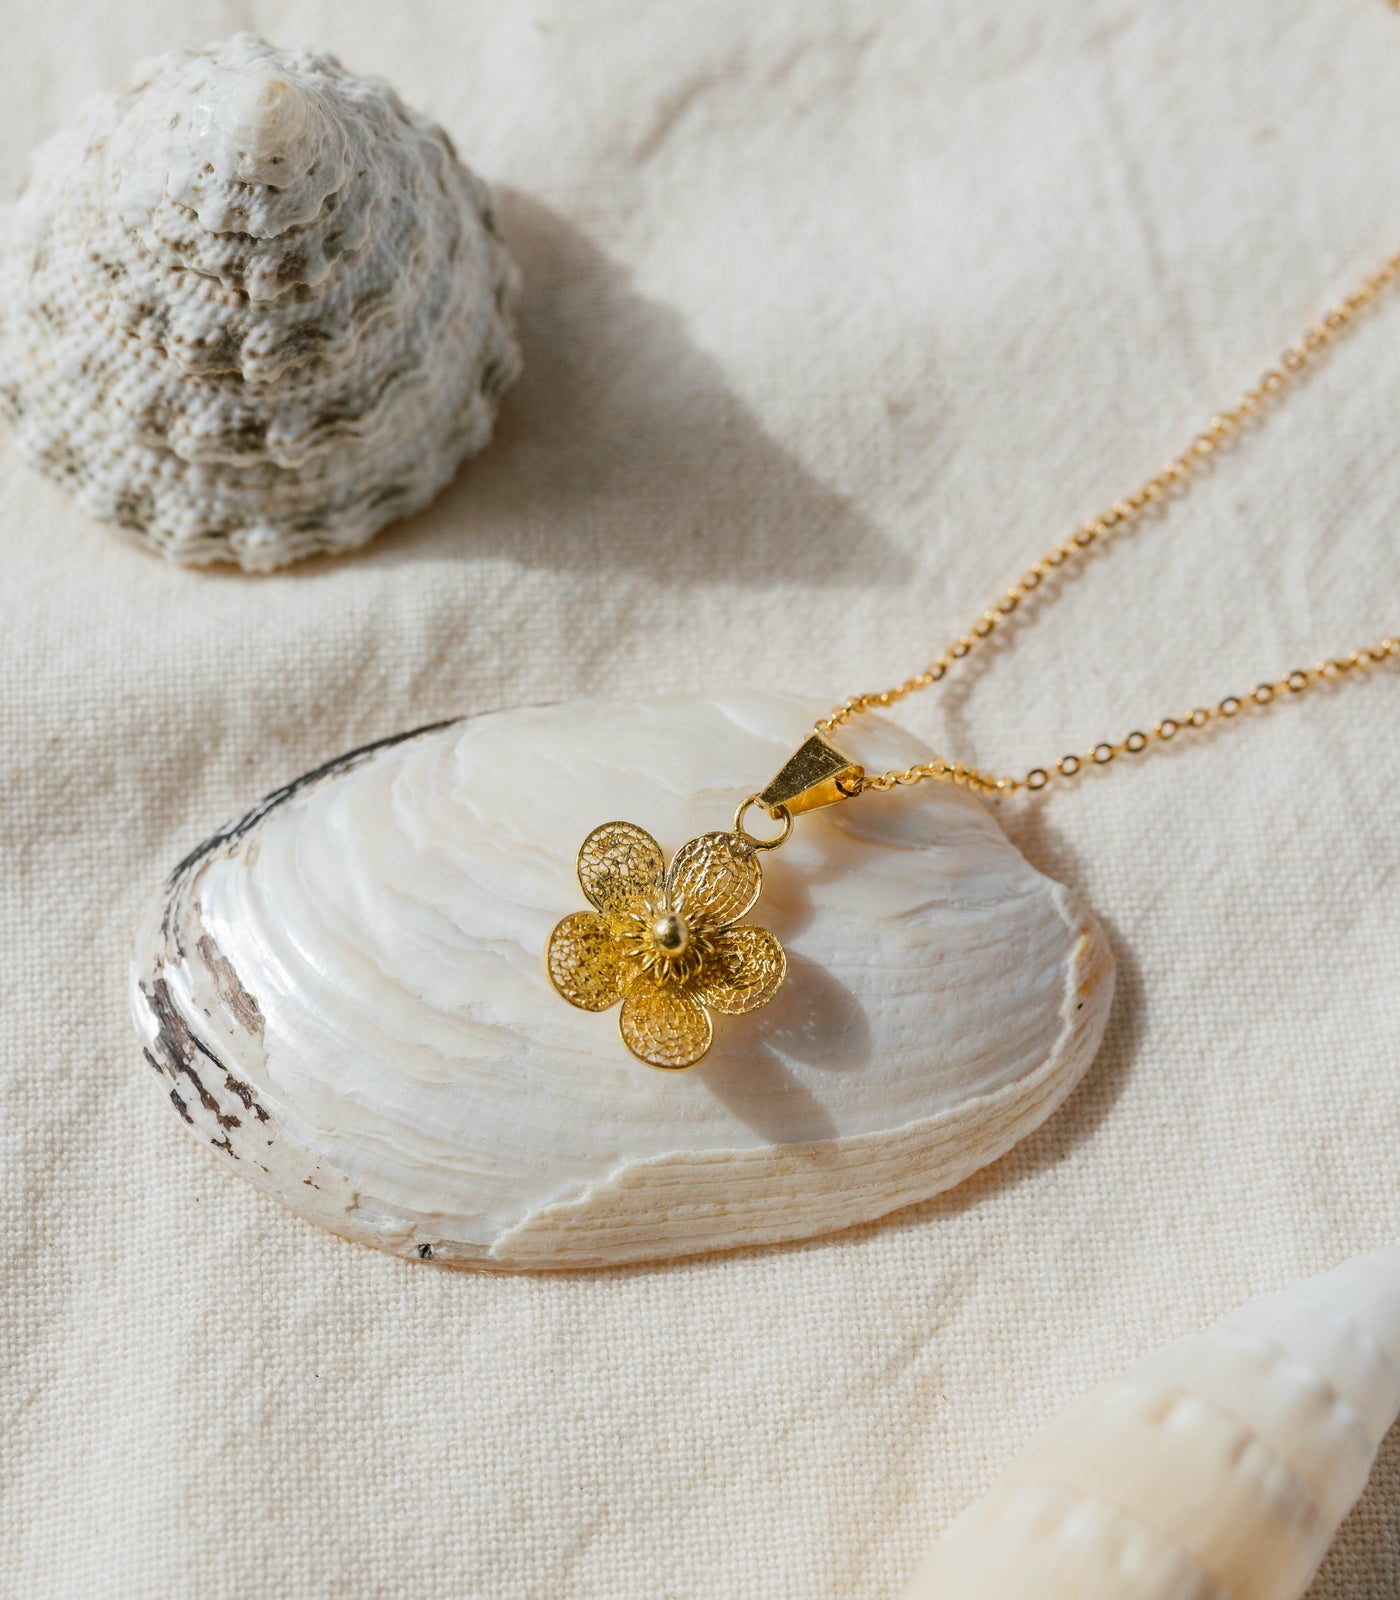 Sampaguita Minimalist Pendant Necklace in Gold- AMAMI